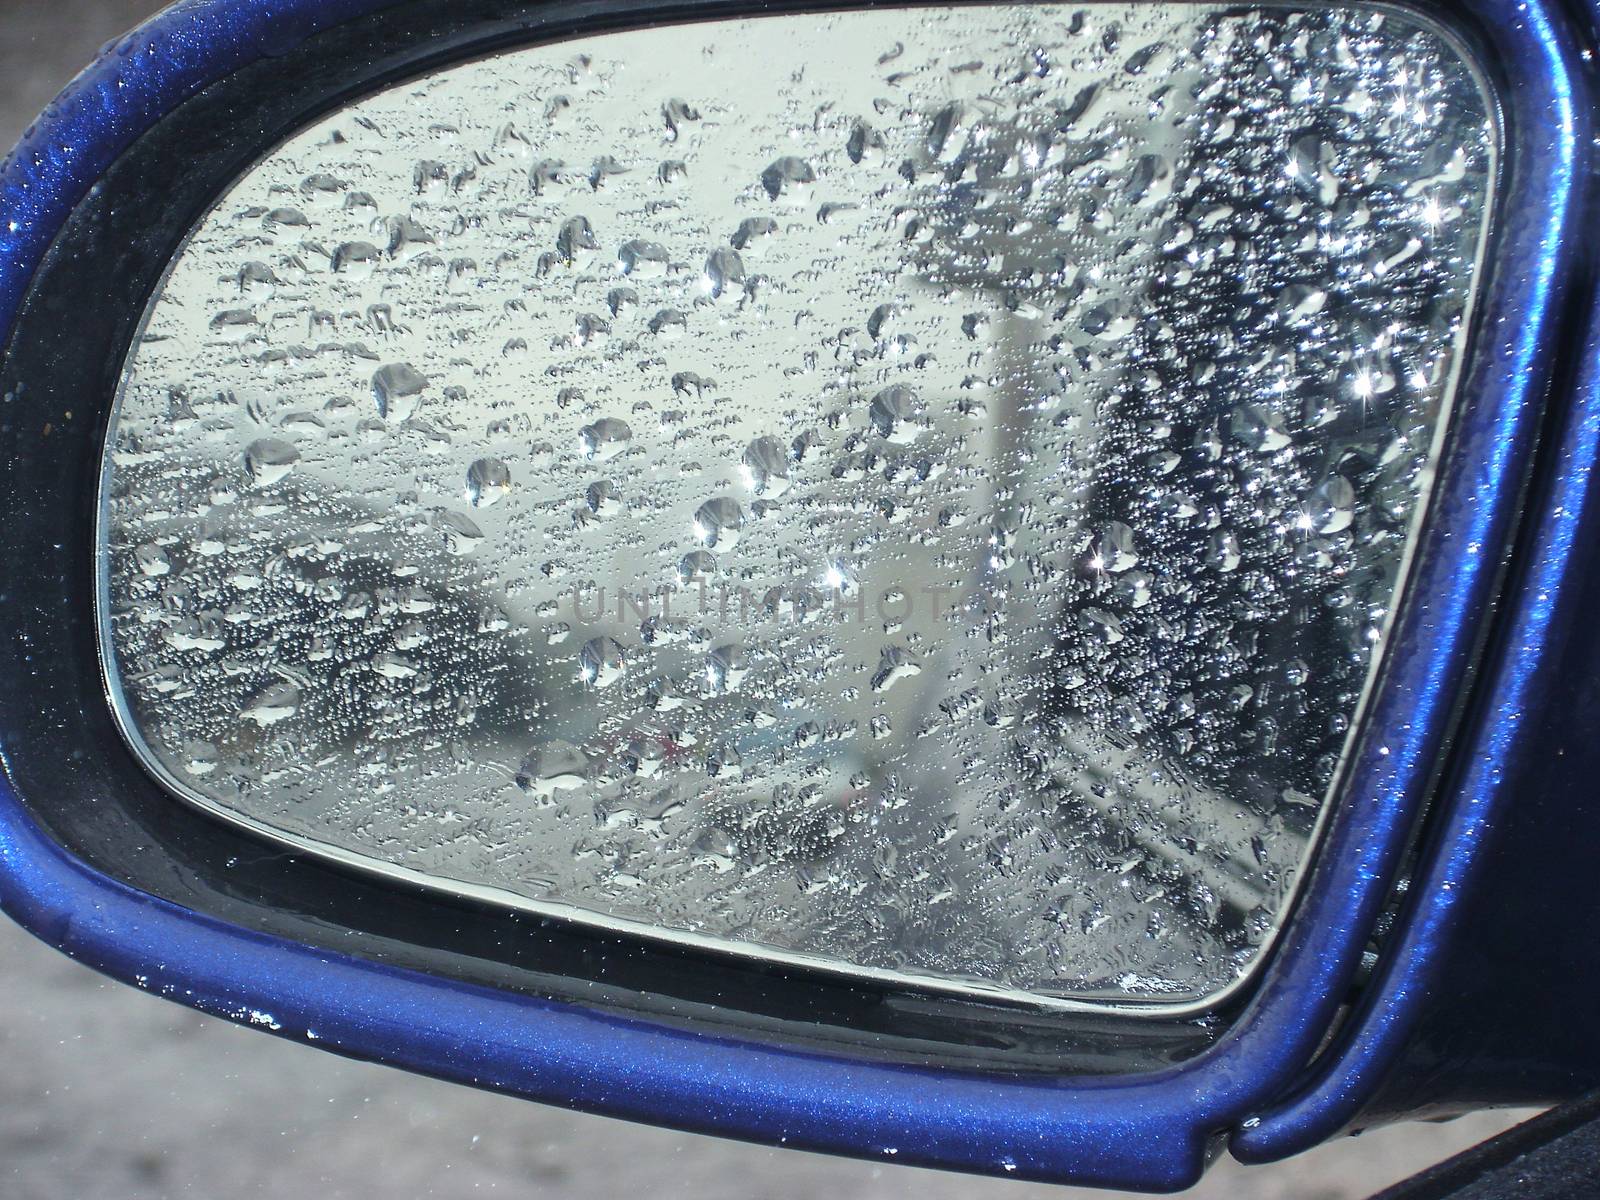 heavy rain raindrops on the car mirror by Irarlaki